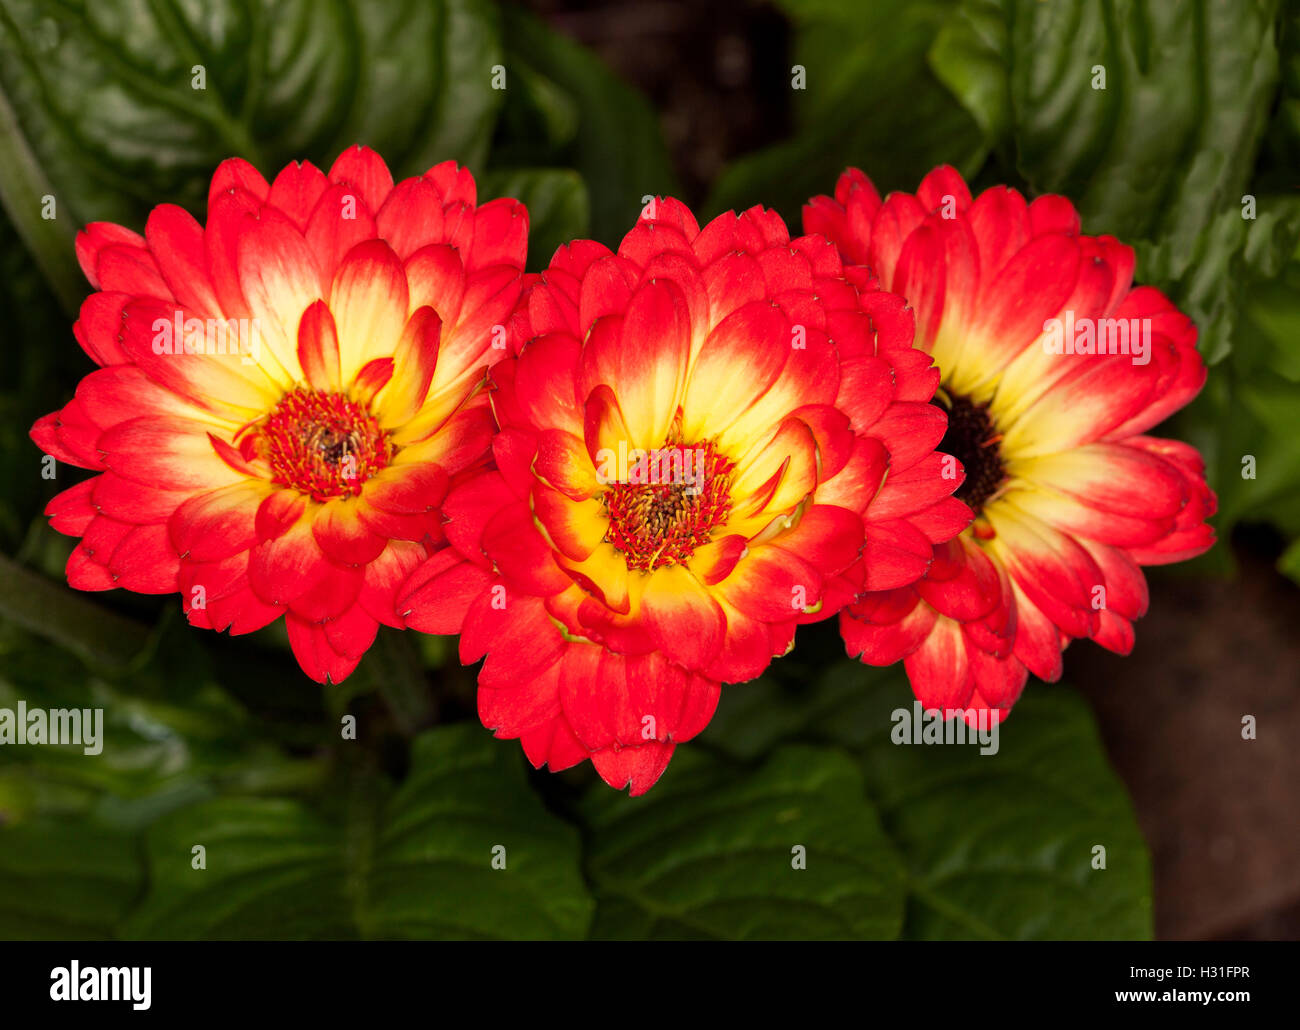 Fila de tres espectaculares flores DE GERBERA JAMESONII con pétalos rojos  intensos, contraste amarillo centros y hojas de color verde oscuro  Fotografía de stock - Alamy